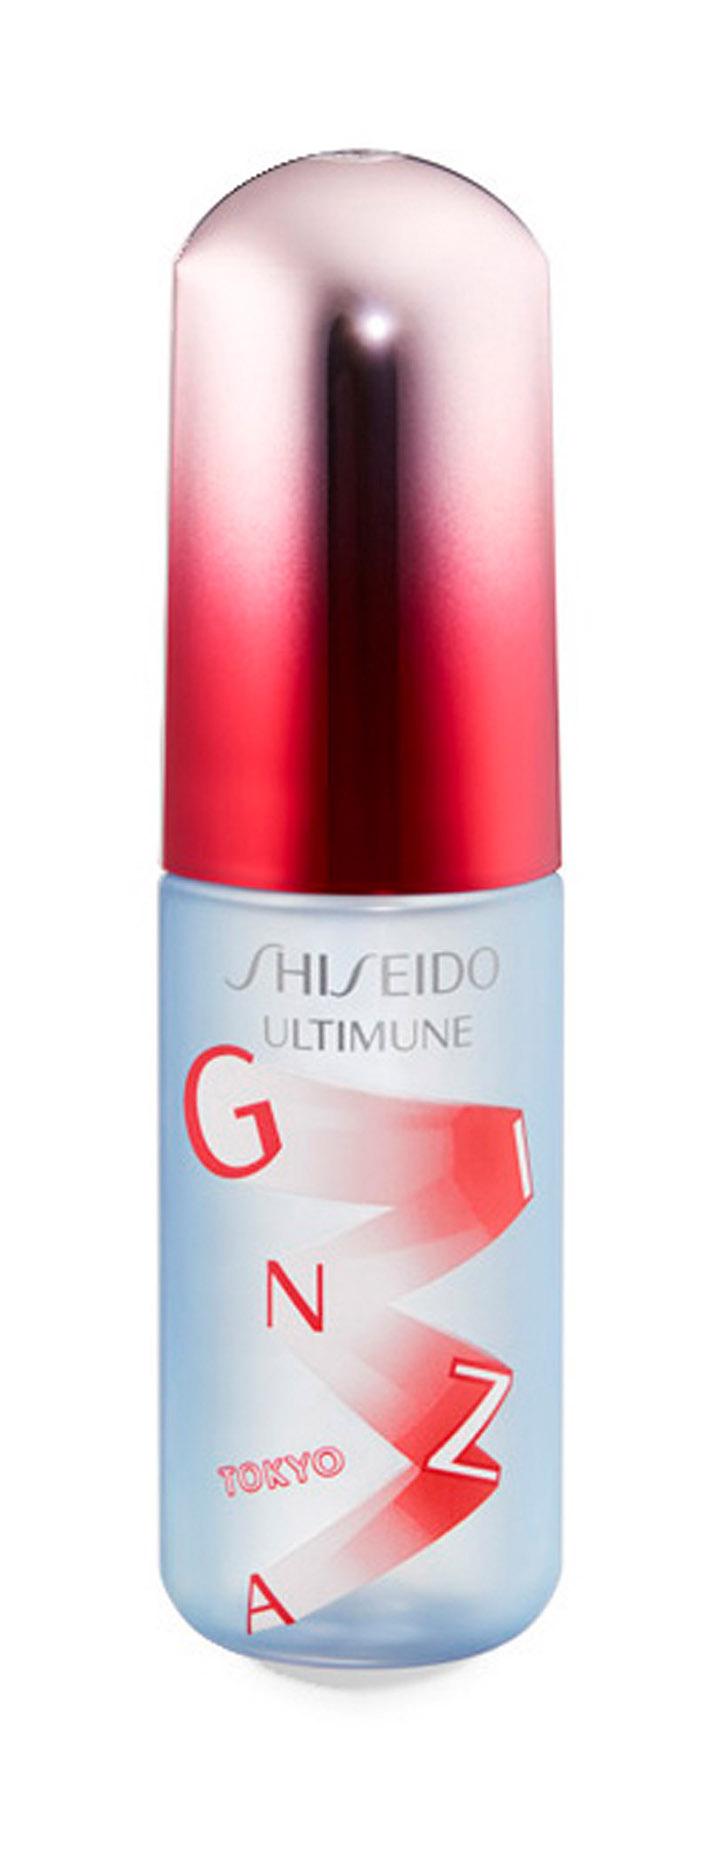 Освежающий мист для лица Shiseido Ultimune Defense Refresh Mist Duo защитный, 60 мл белита м тоник мист минеральный для лица освежающий ultra marine 190